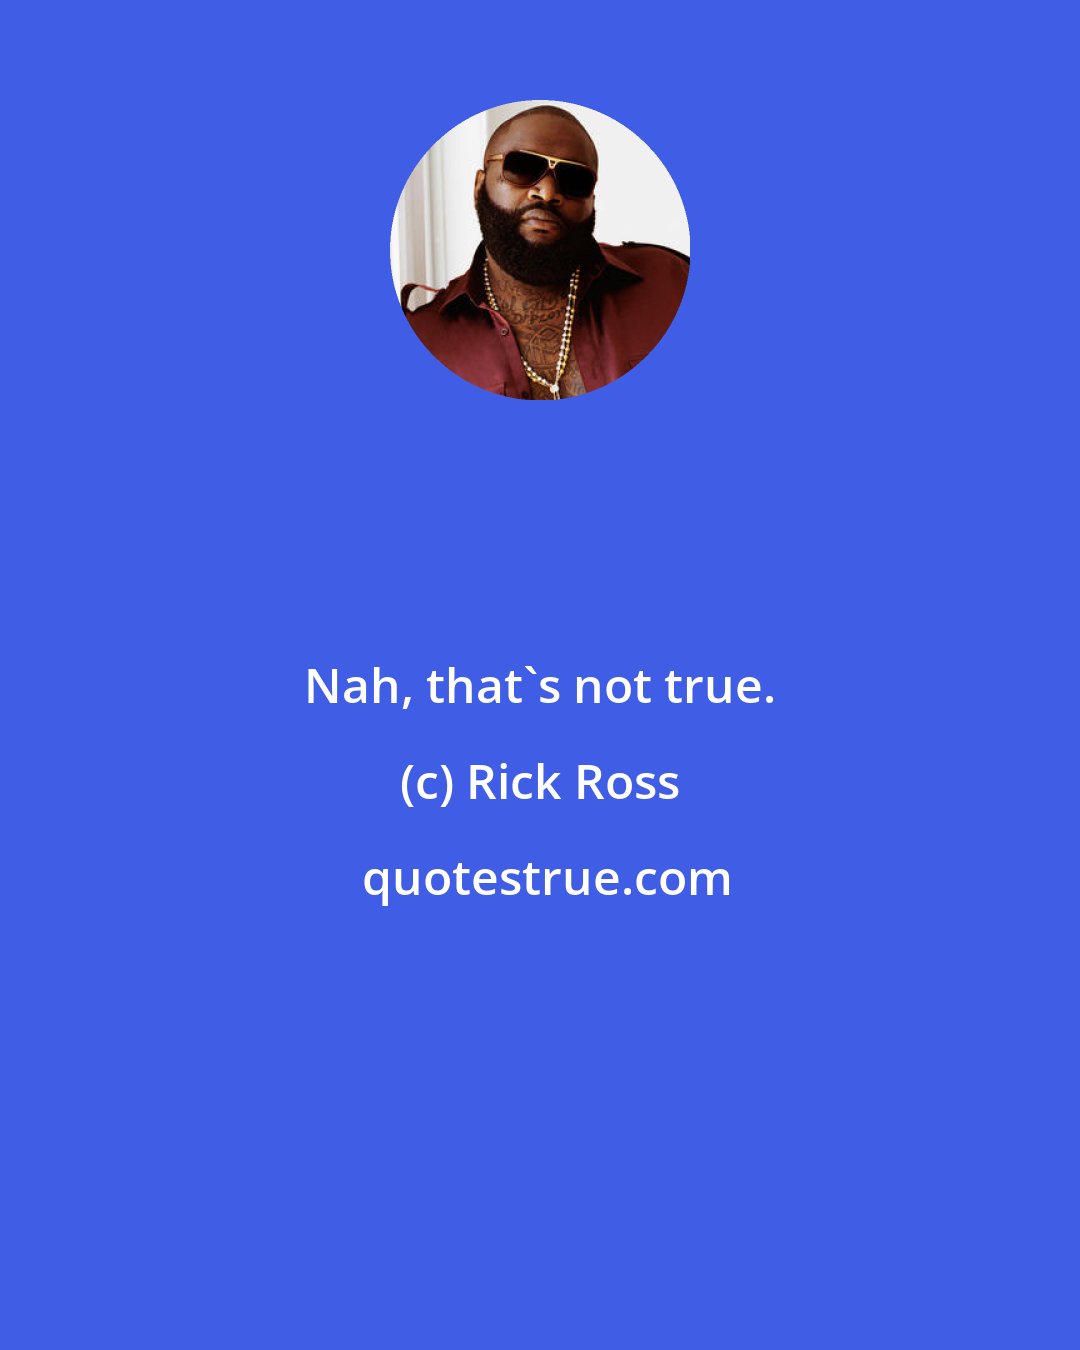 Rick Ross: Nah, that's not true.